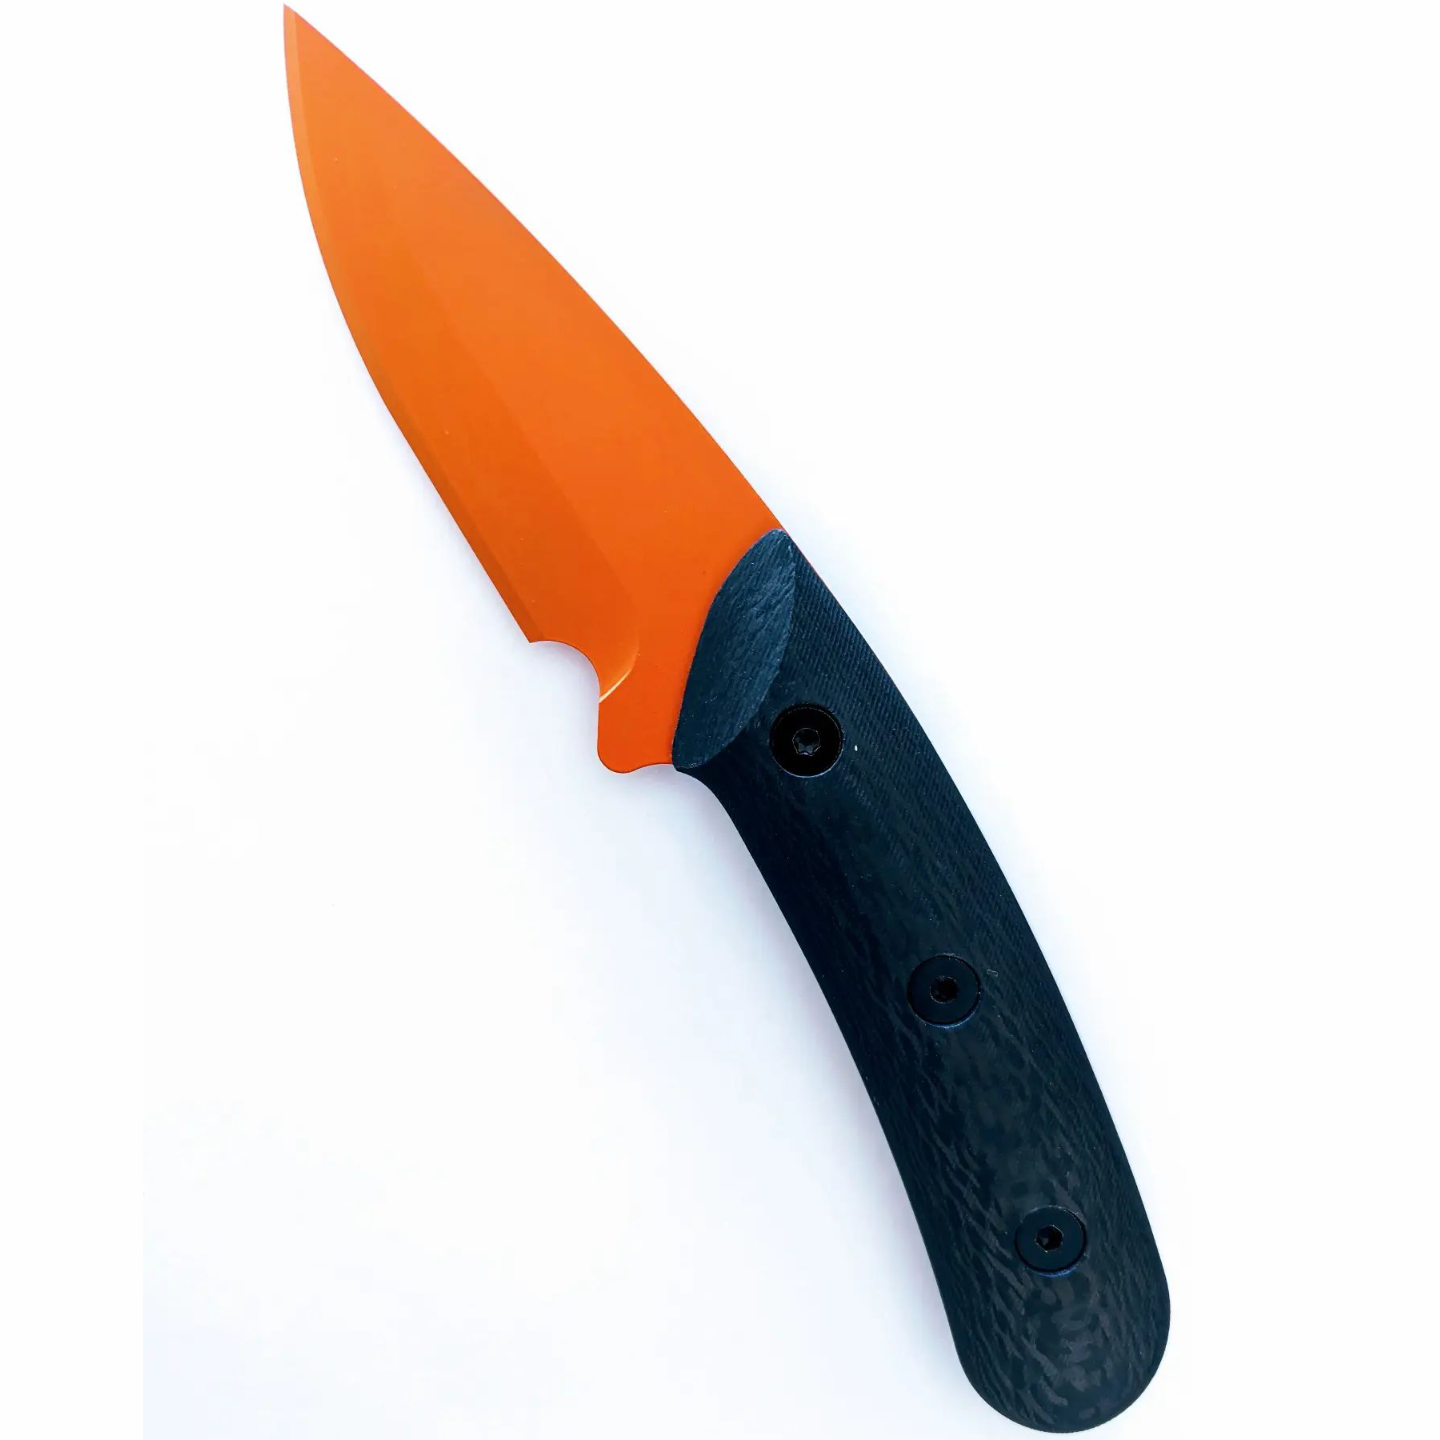 Fixed Blade Knife - Orange Cerakote with Black G10 Handle